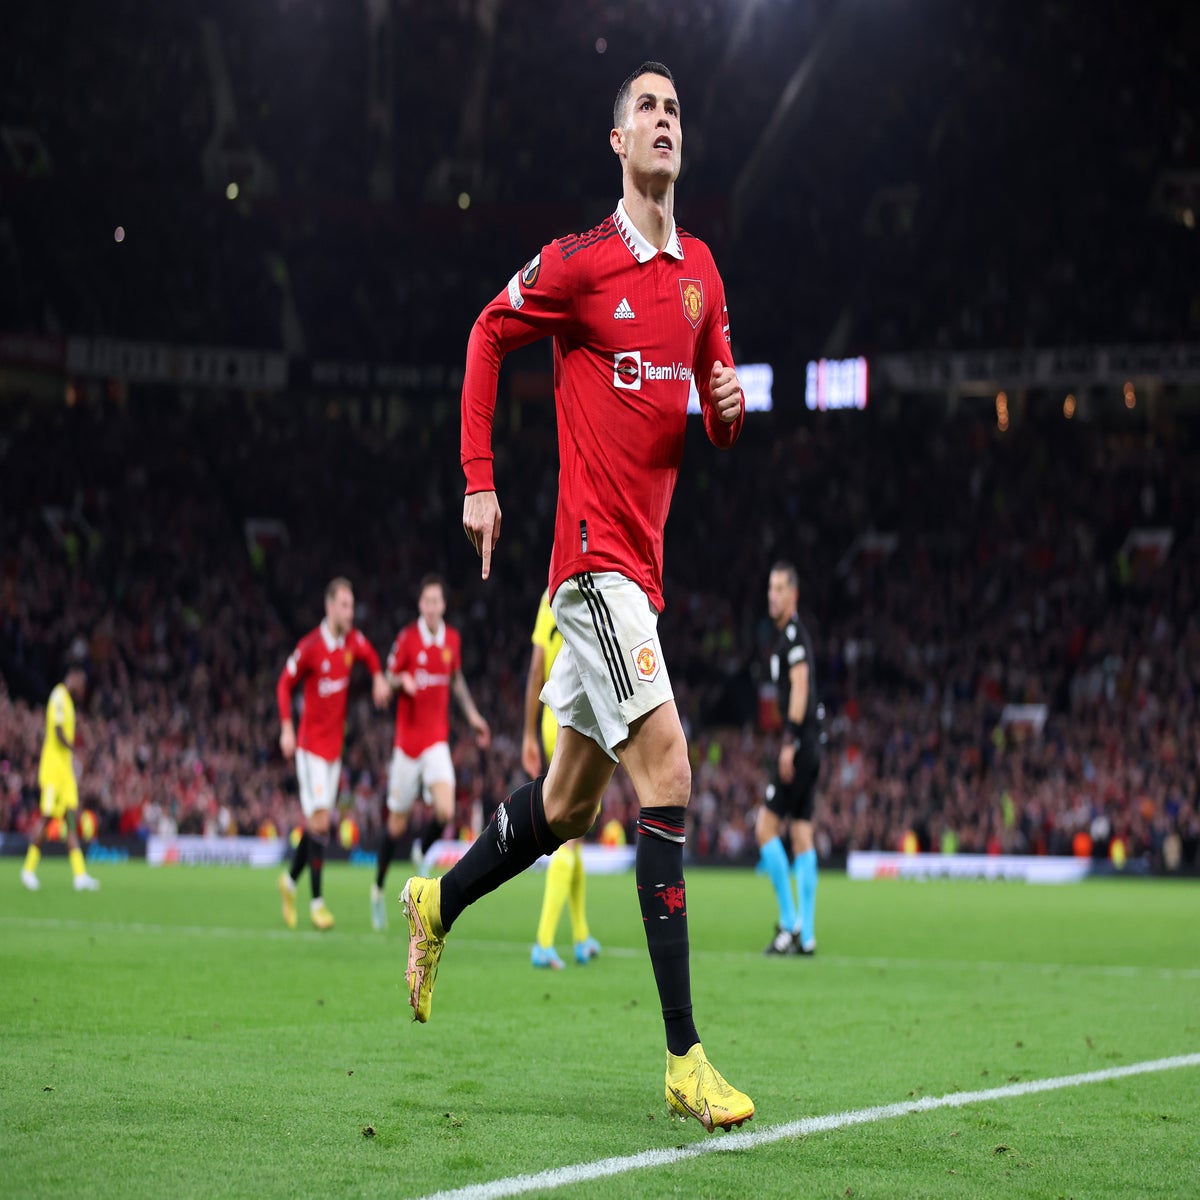 Cristiano Ronaldo fires Manchester United into Champions League last 16